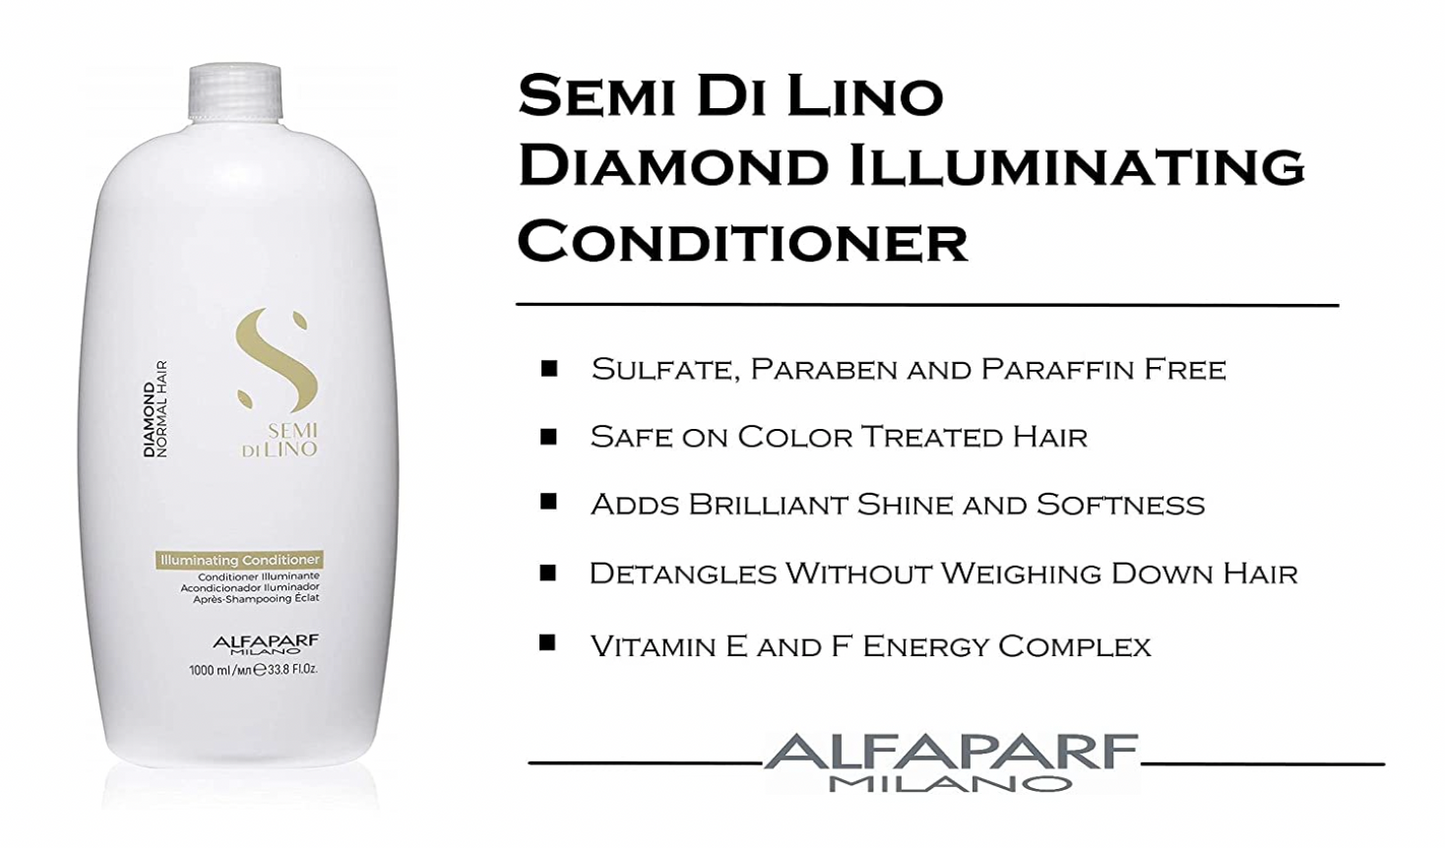 ALFAPARF MILANO SEMI DI LINO Illuminating Conditioner Diamond Normal Hair 1000ml